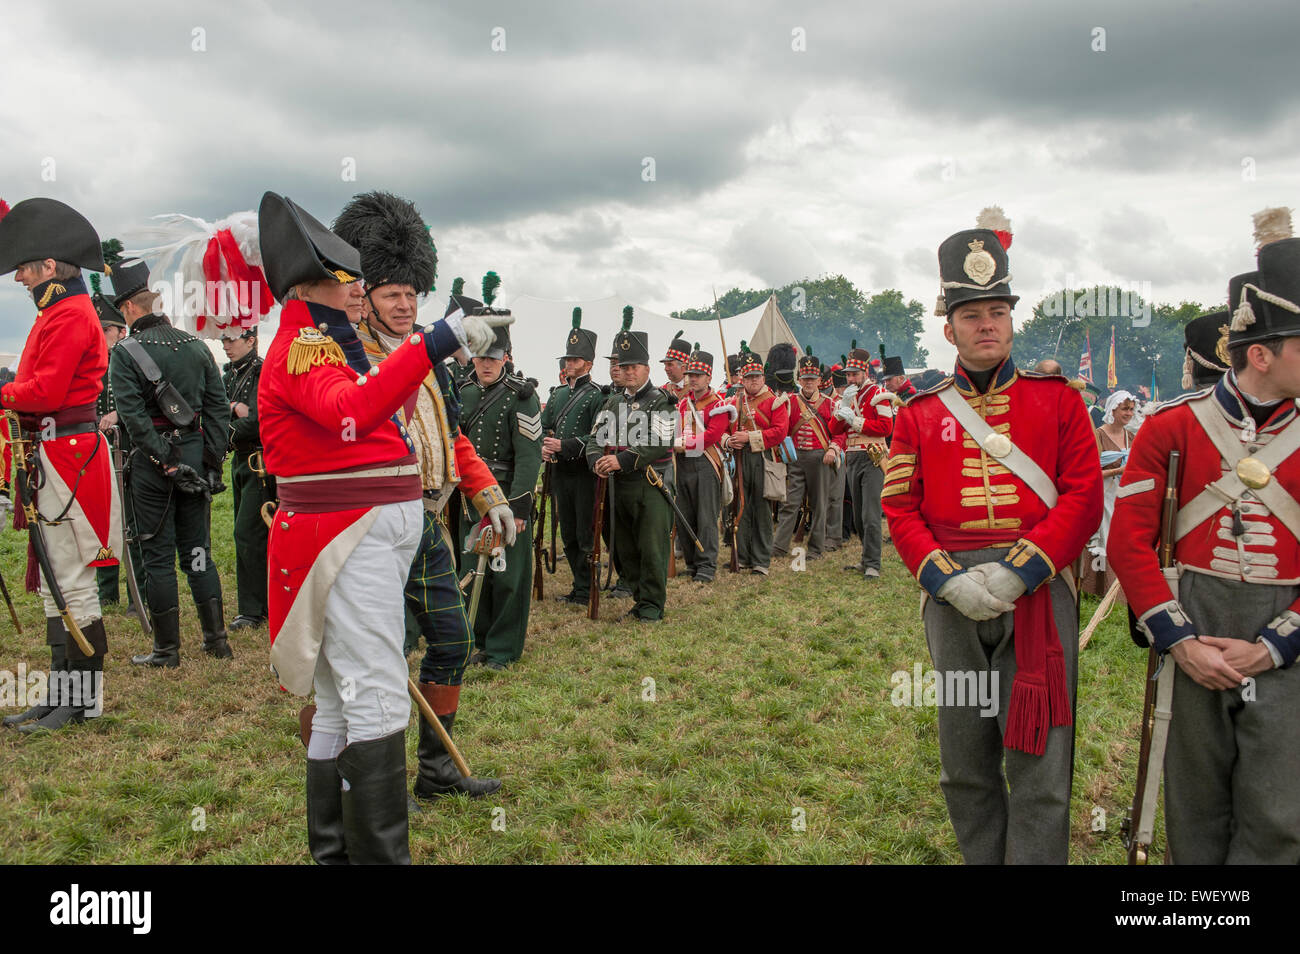 De reconstitution de la bataille de Waterloo sur la bataille d'origine en Belgique pour commémorer Waterloo 200, les troupes alliées se rassemblent. Banque D'Images